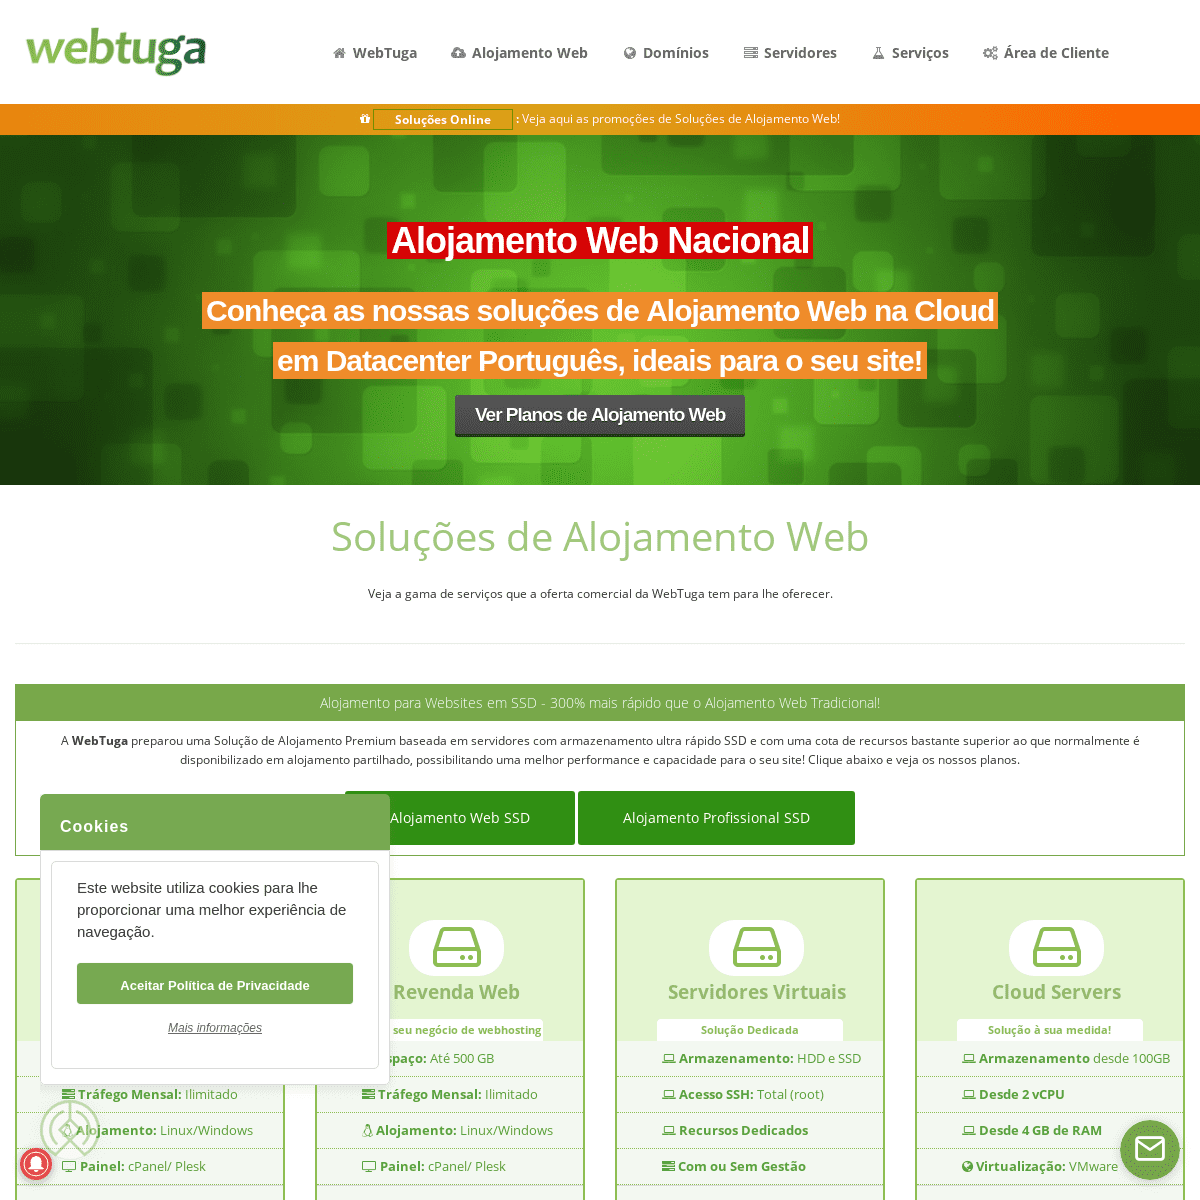 A complete backup of webtuga.pt